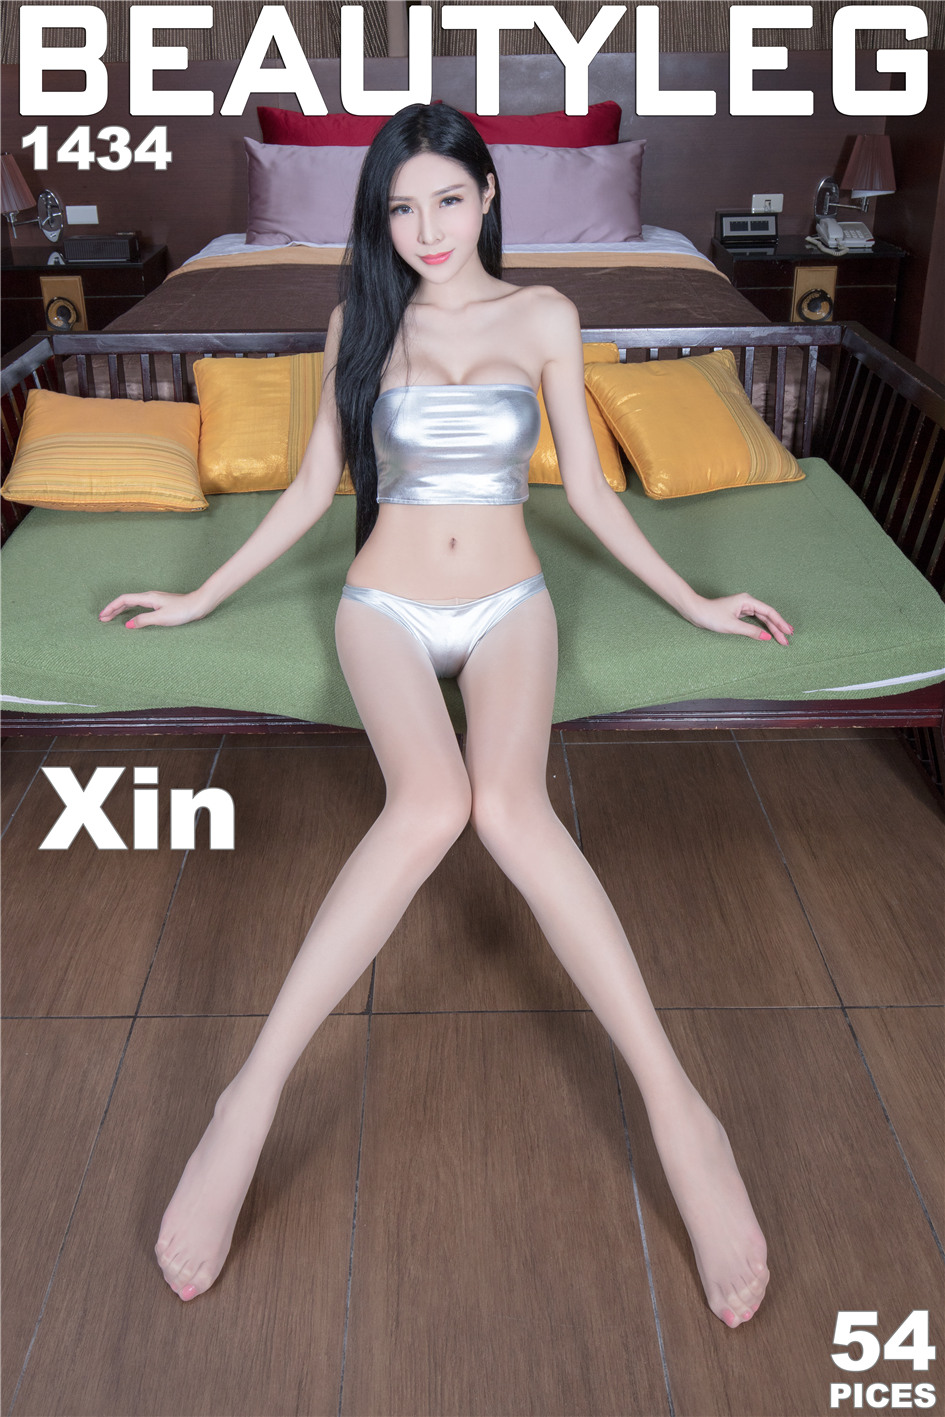 [Beautyleg] 台湾美腿模特Xin穿丝袜泳衣高清写真套图 No.1434第1张